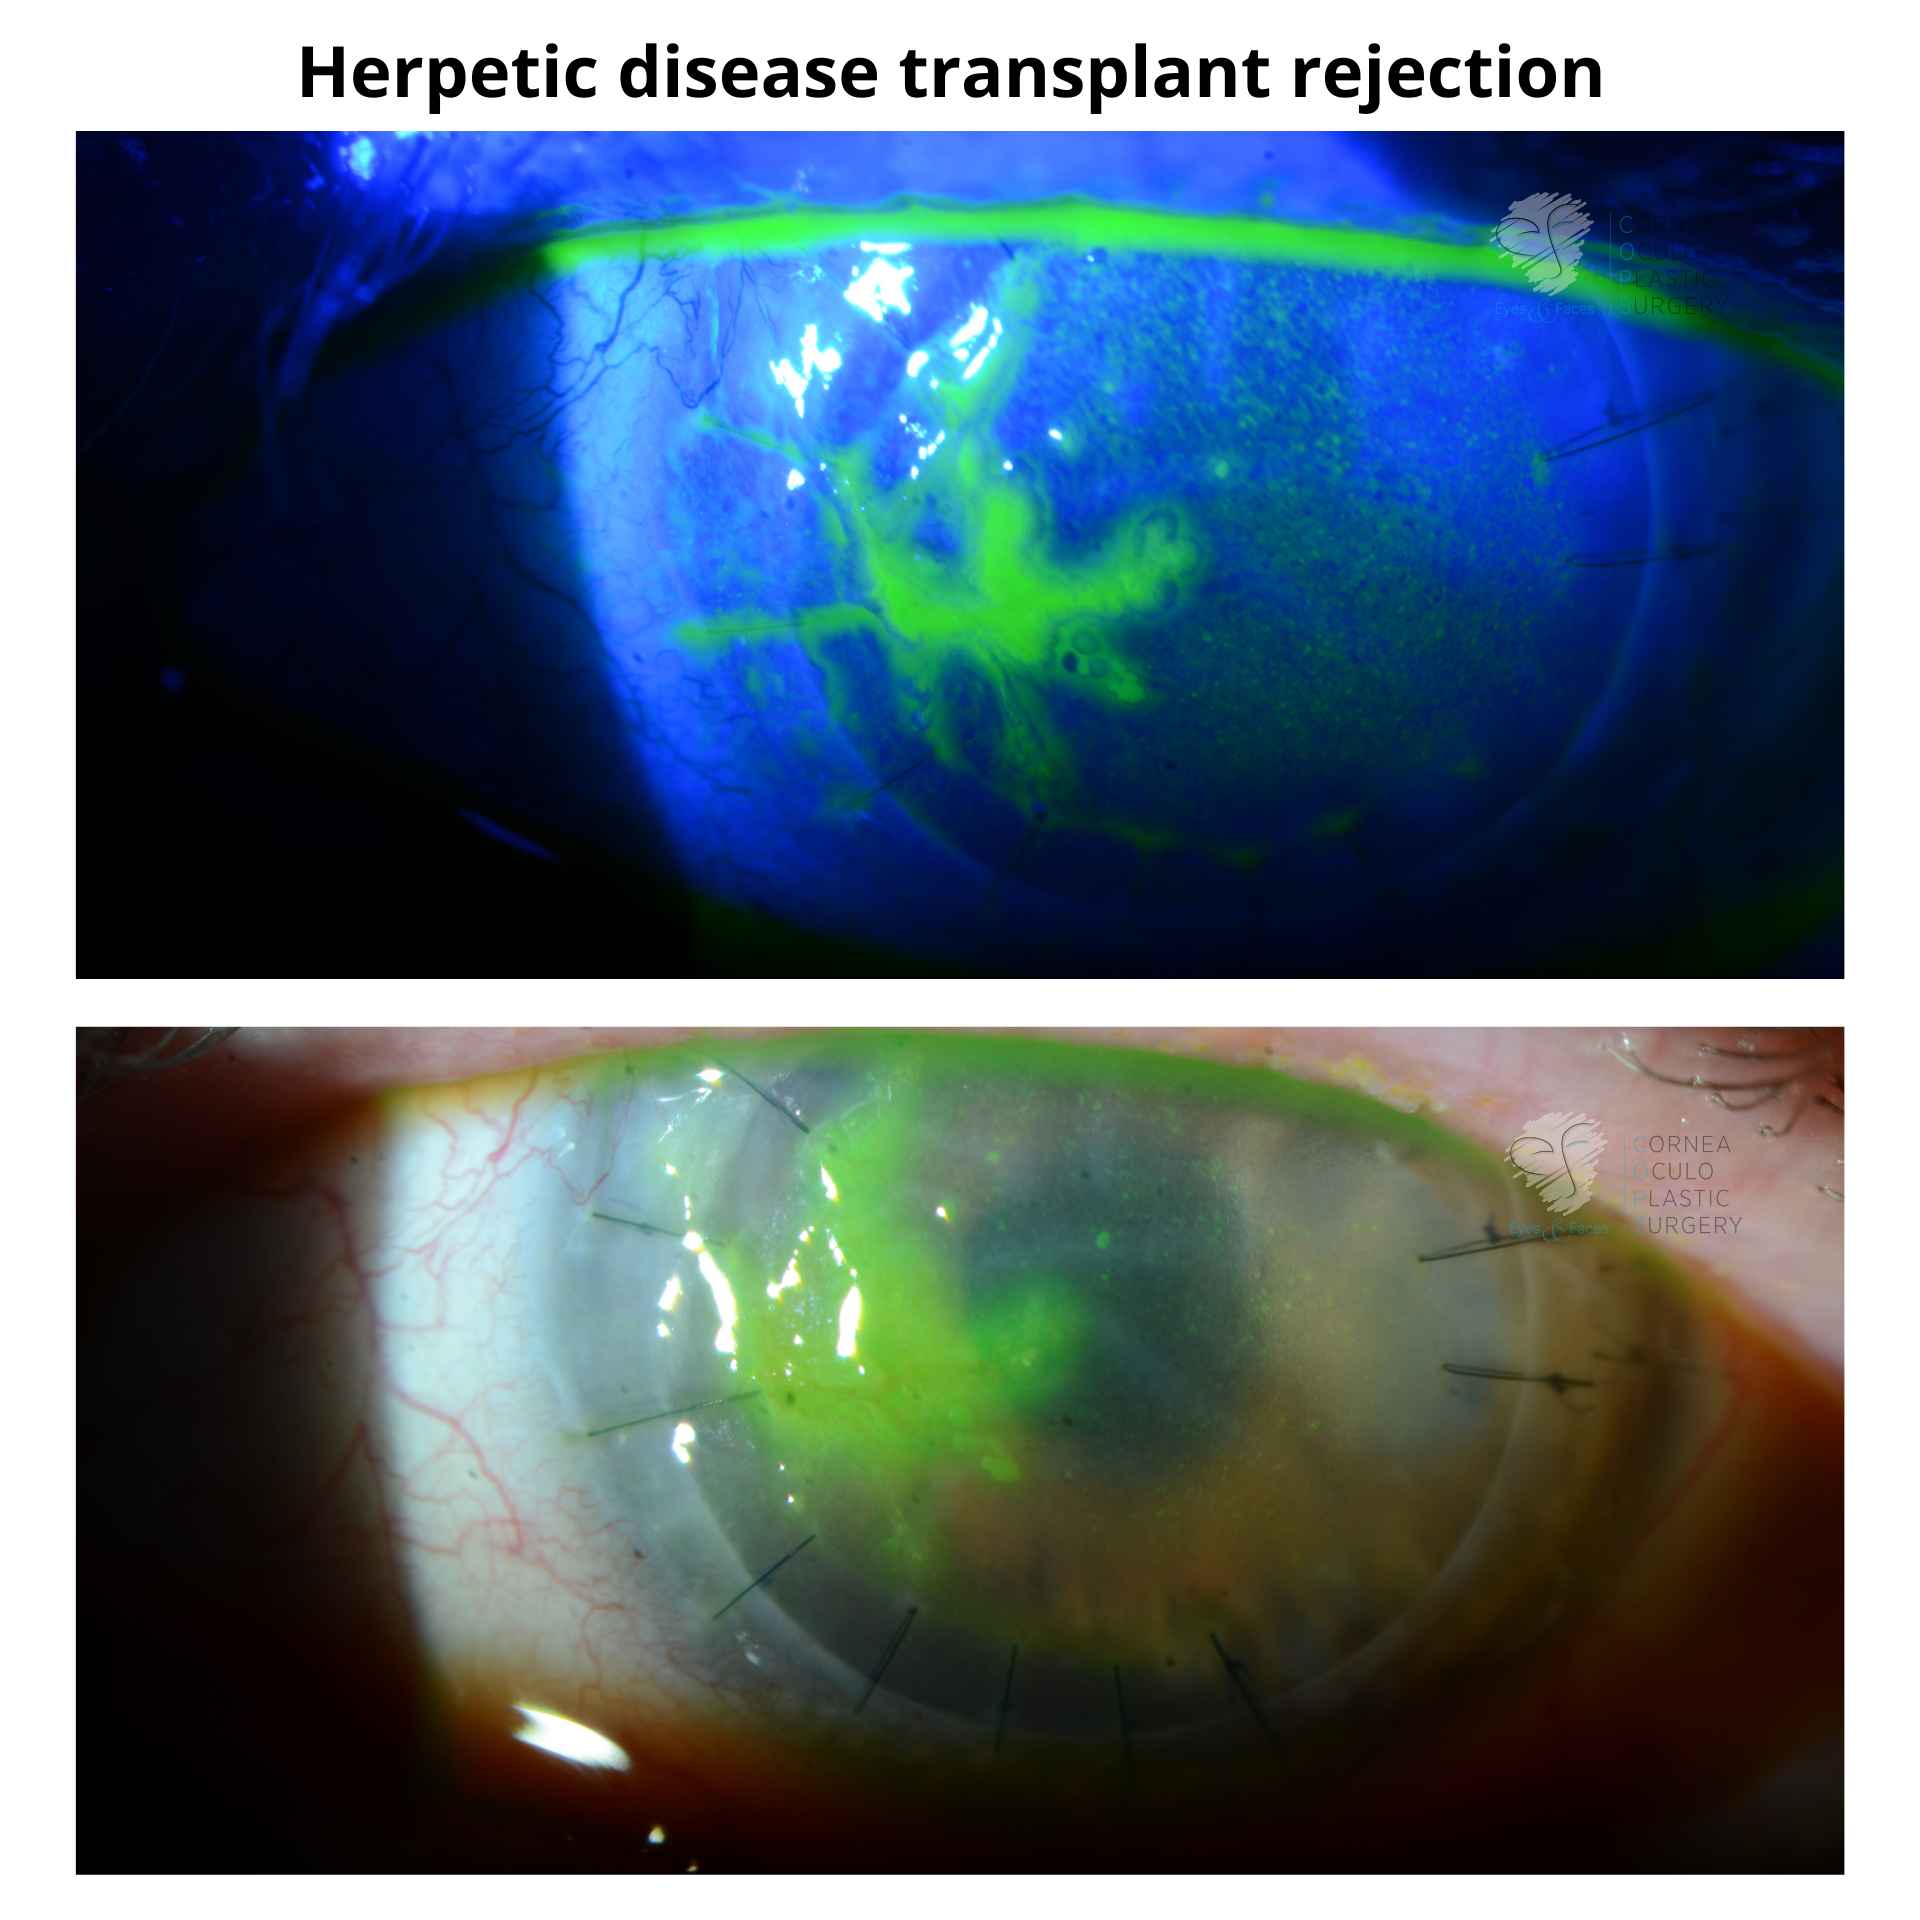 Herpetic disease transplant rejection